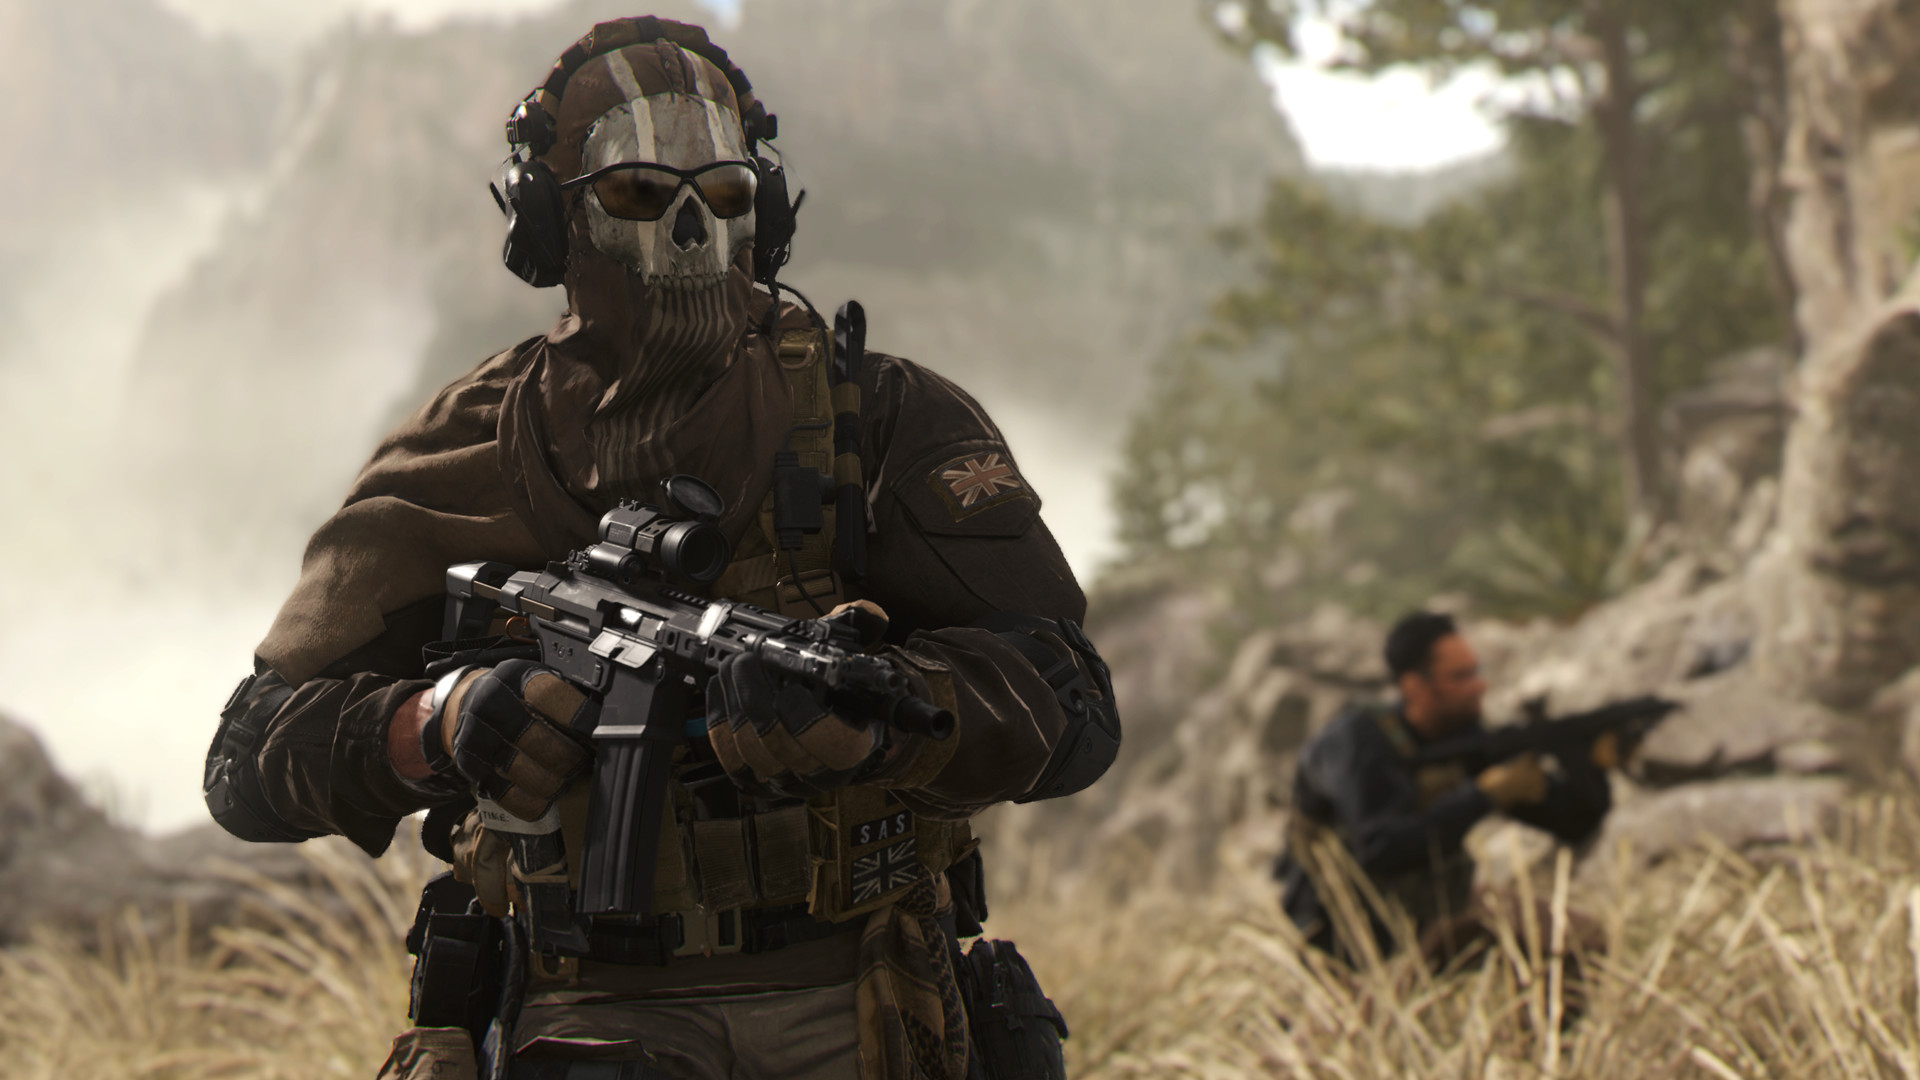 Review: Modern Warfare 2 is the Pinnacle of Gaming - My Met Media